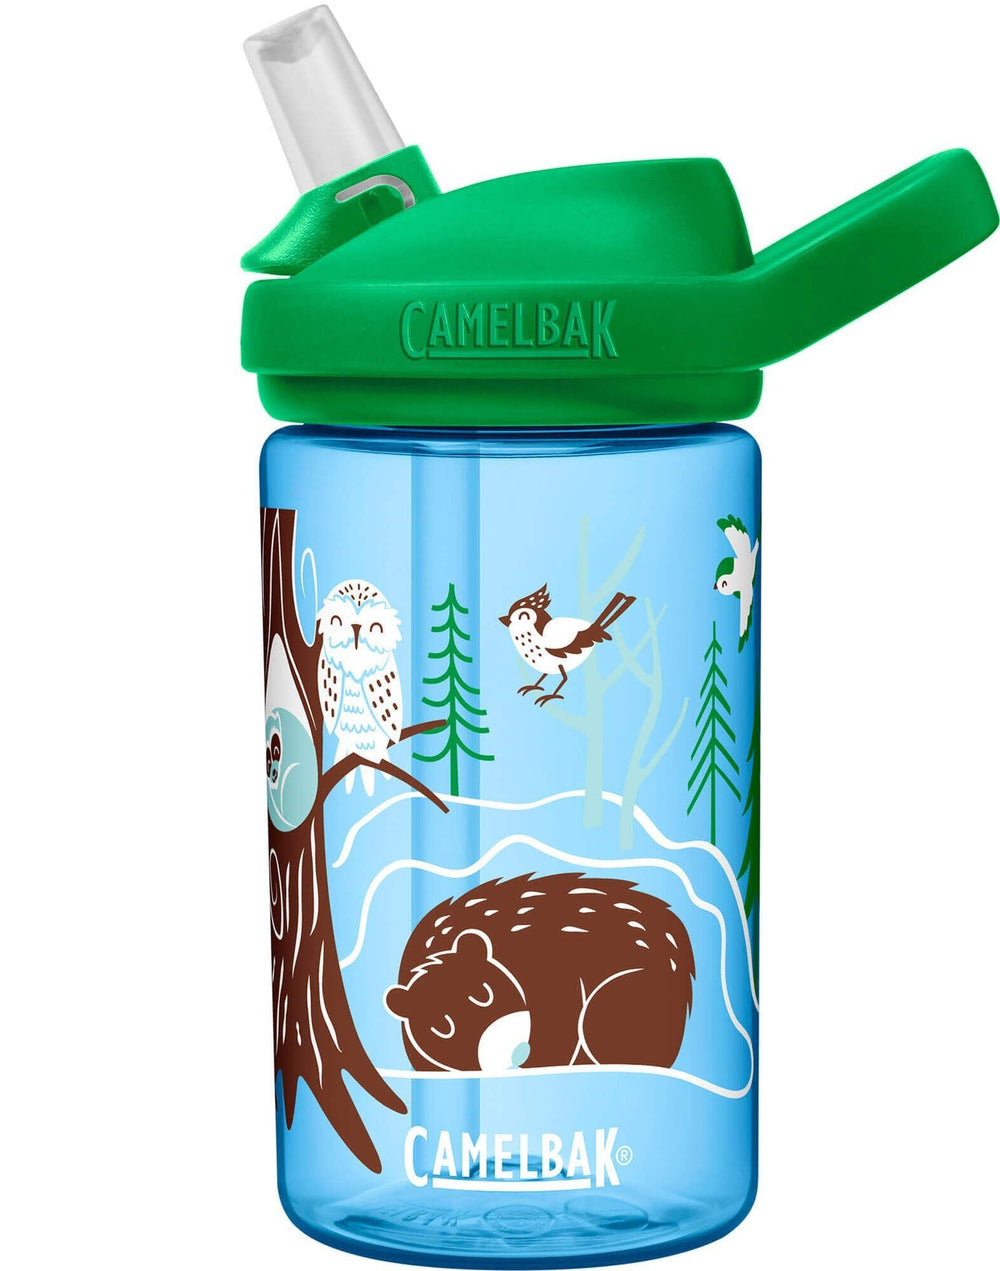 Camelbak Water Bottles Hibernating for Winter LE Camelbak Eddy+ Kid's BPA-Free Bottle 14oz - Various Styles .4L